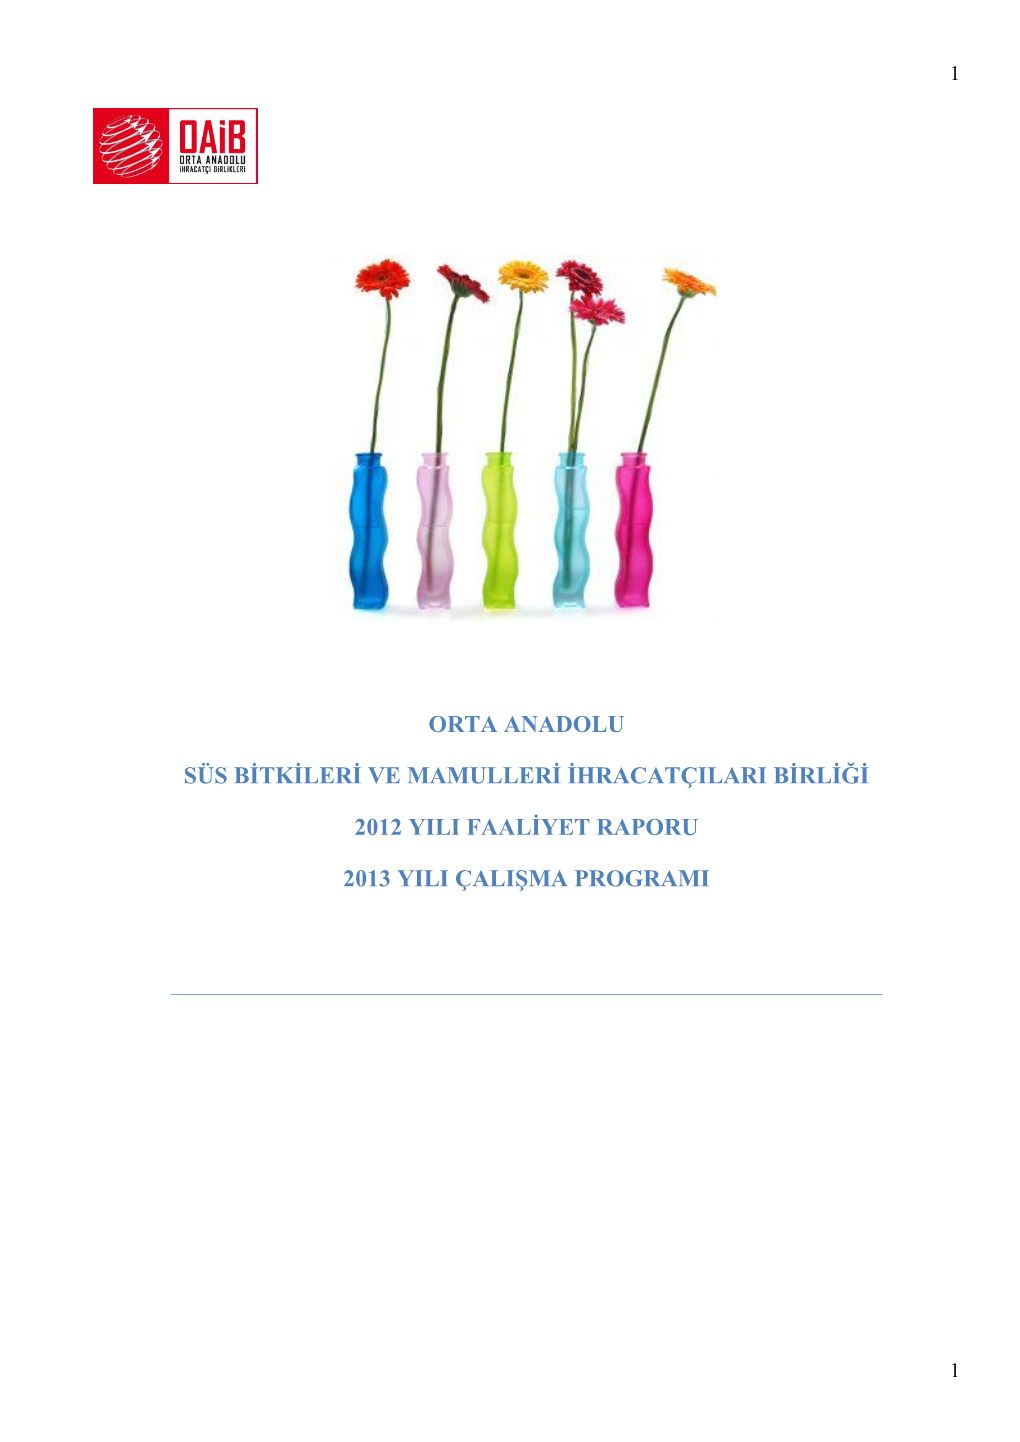 Süs Bitkileri Ve Mamulleri İhracatçıları Birliği 2012 Yılı Faaliyet Raporu